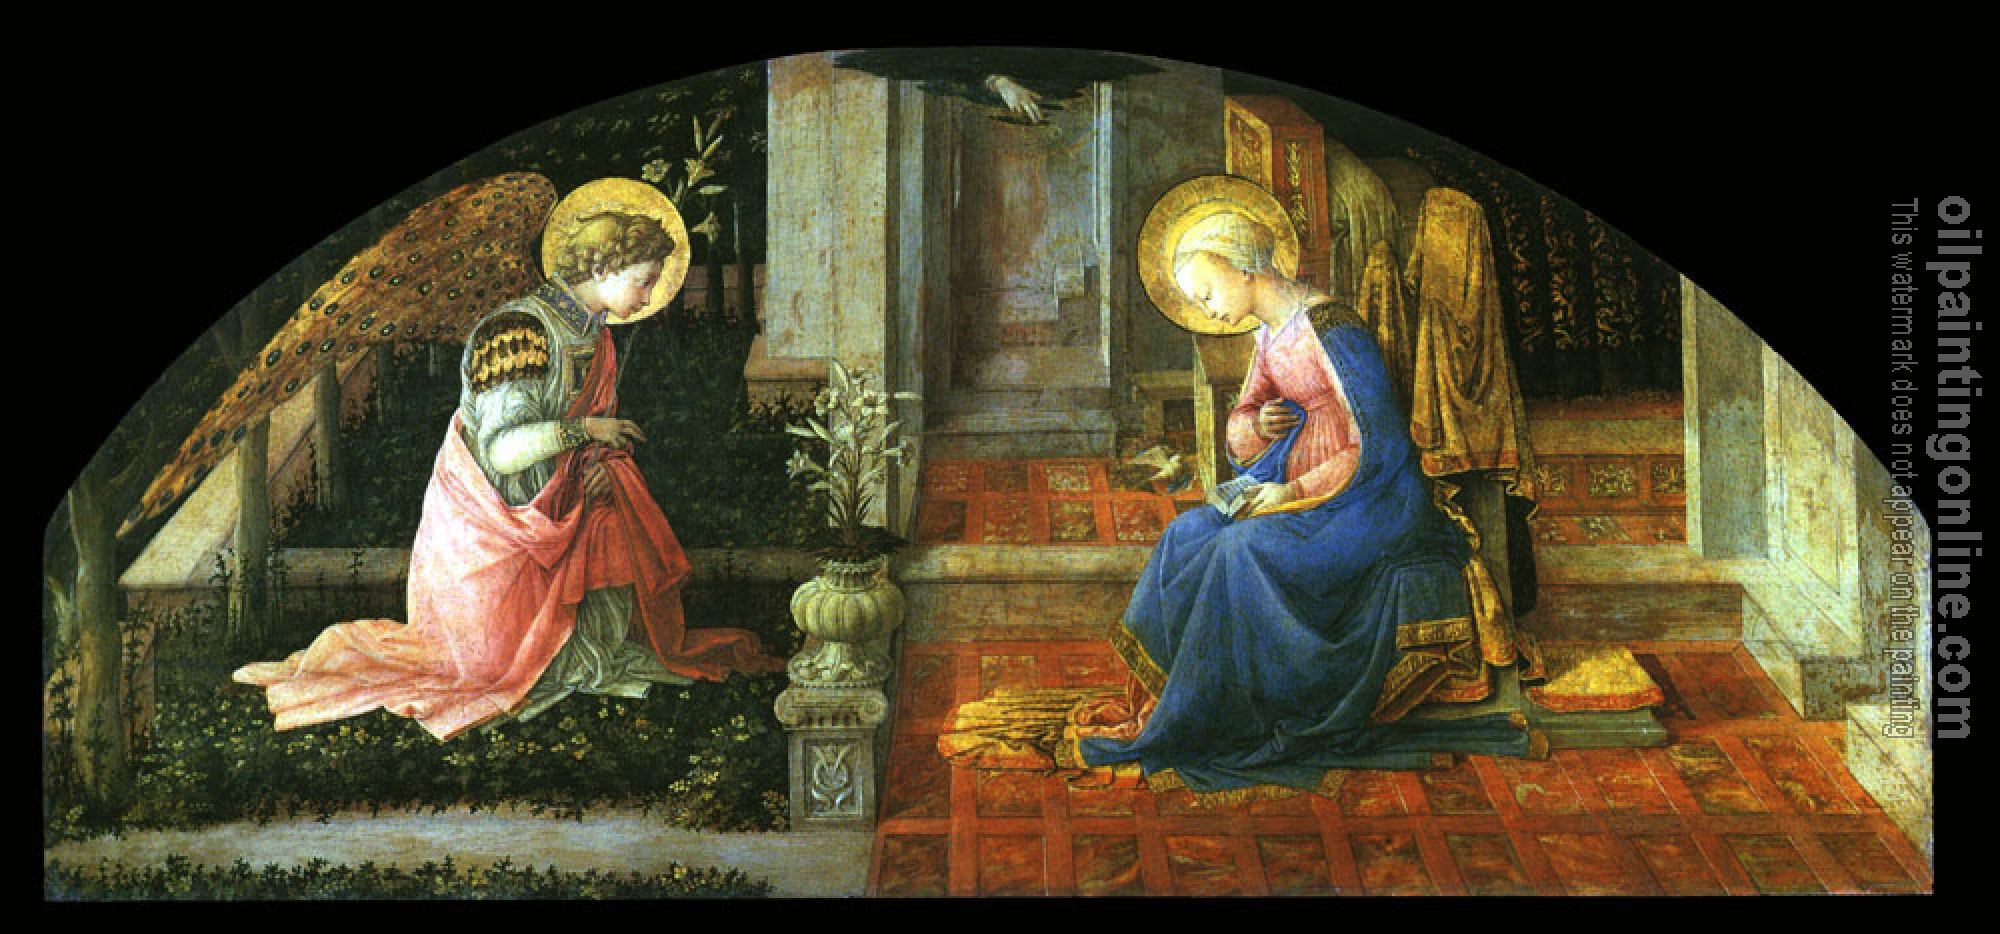 Lippi, Filippino - The Annunciation